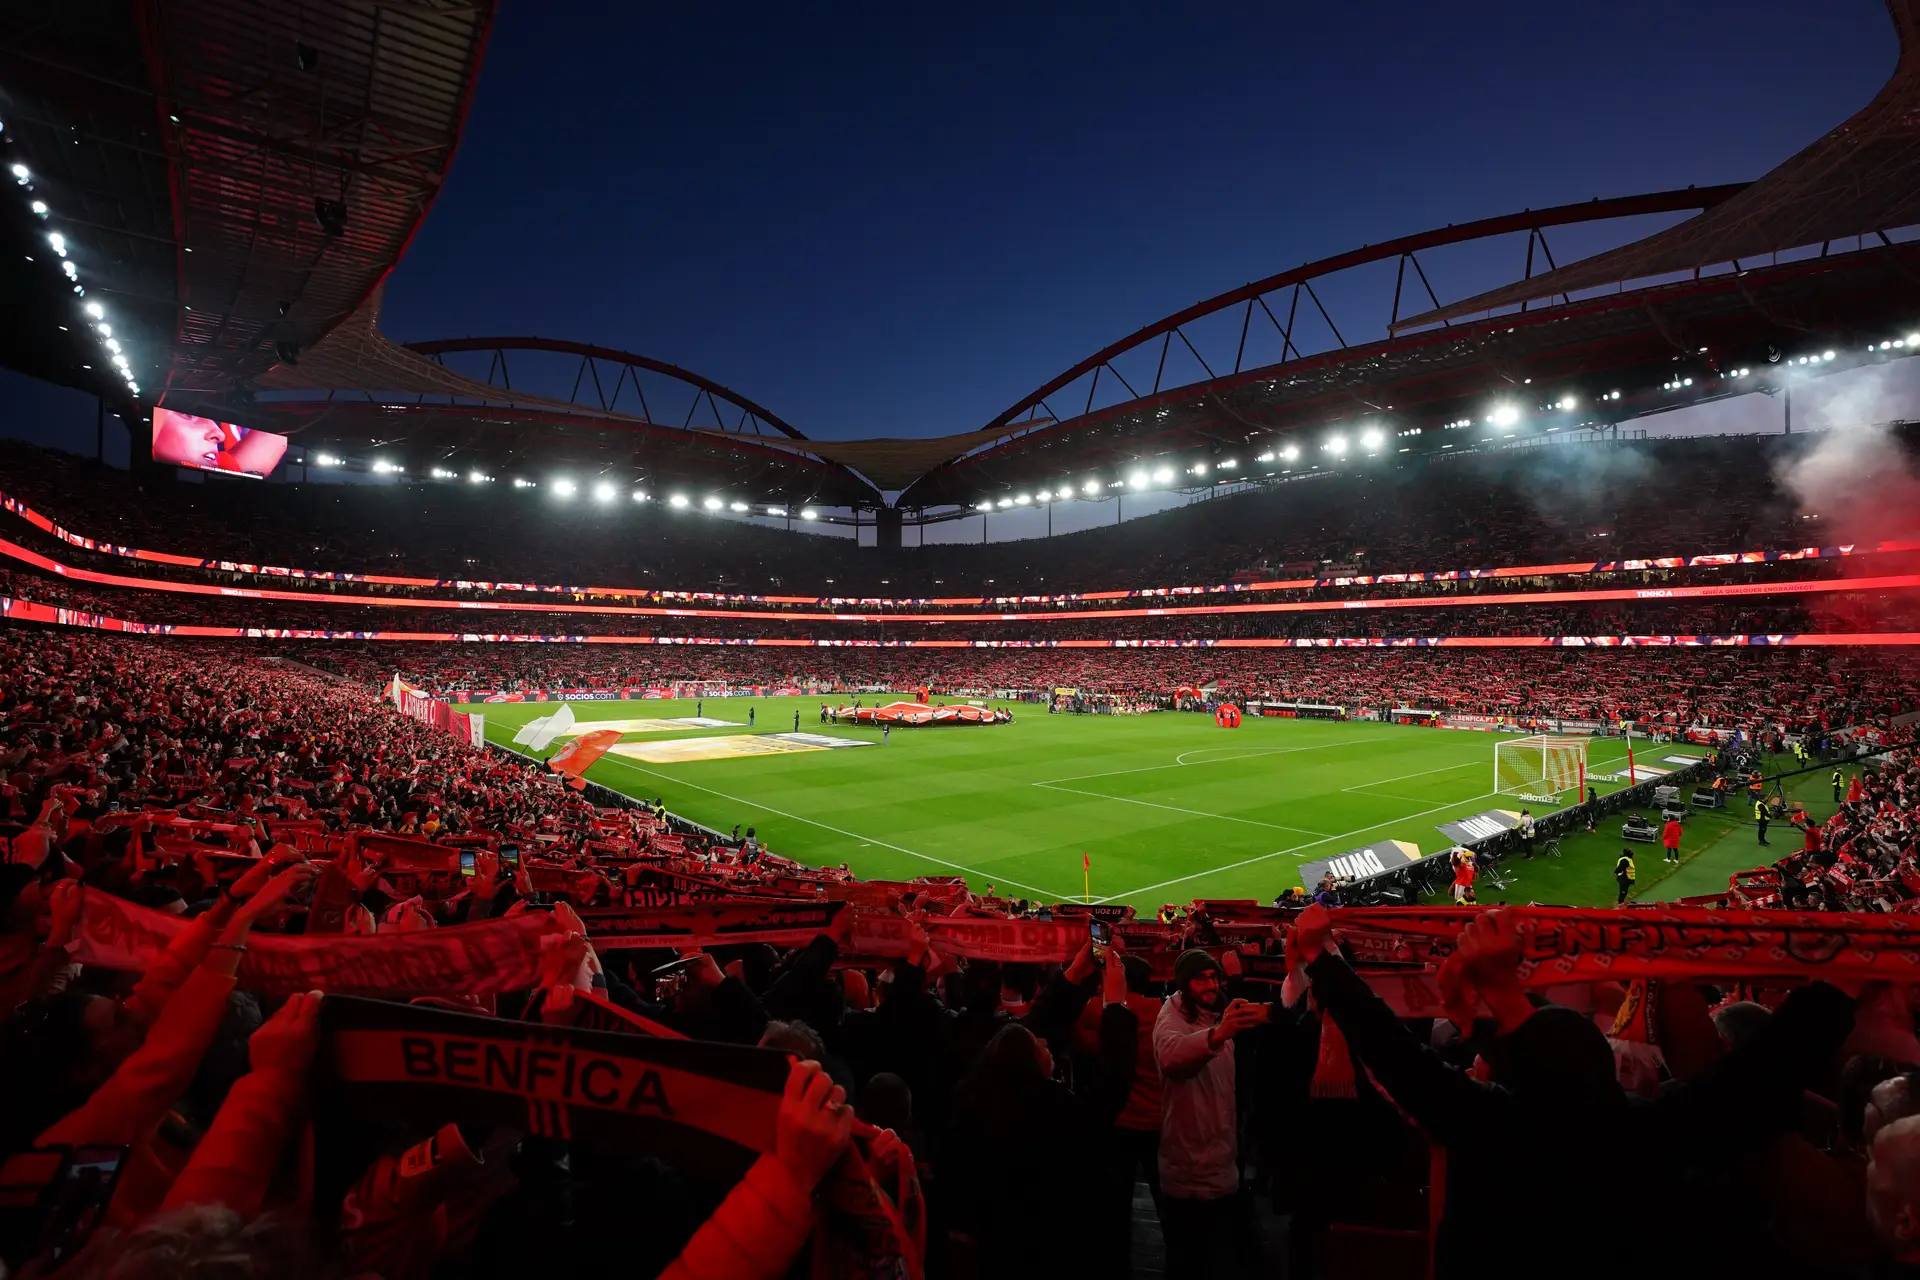 Futebol: FC Porto venceu e ganhou pontos ao Benfica